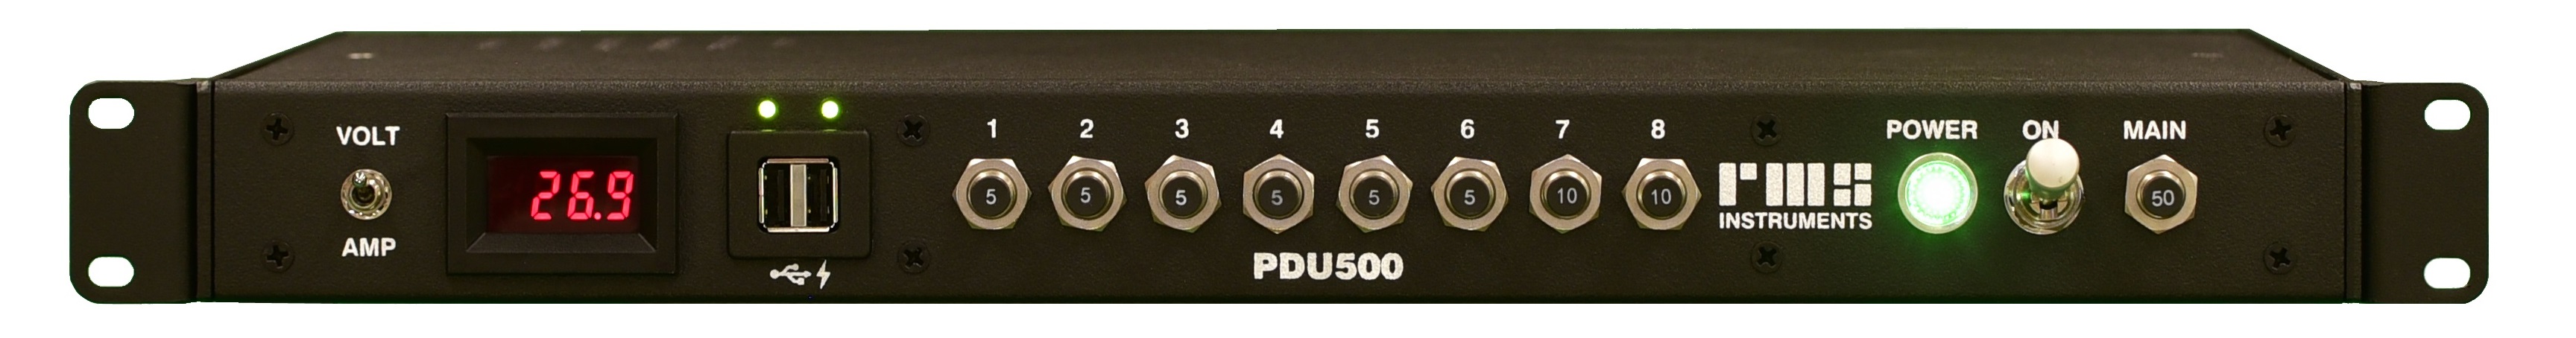 PDU500